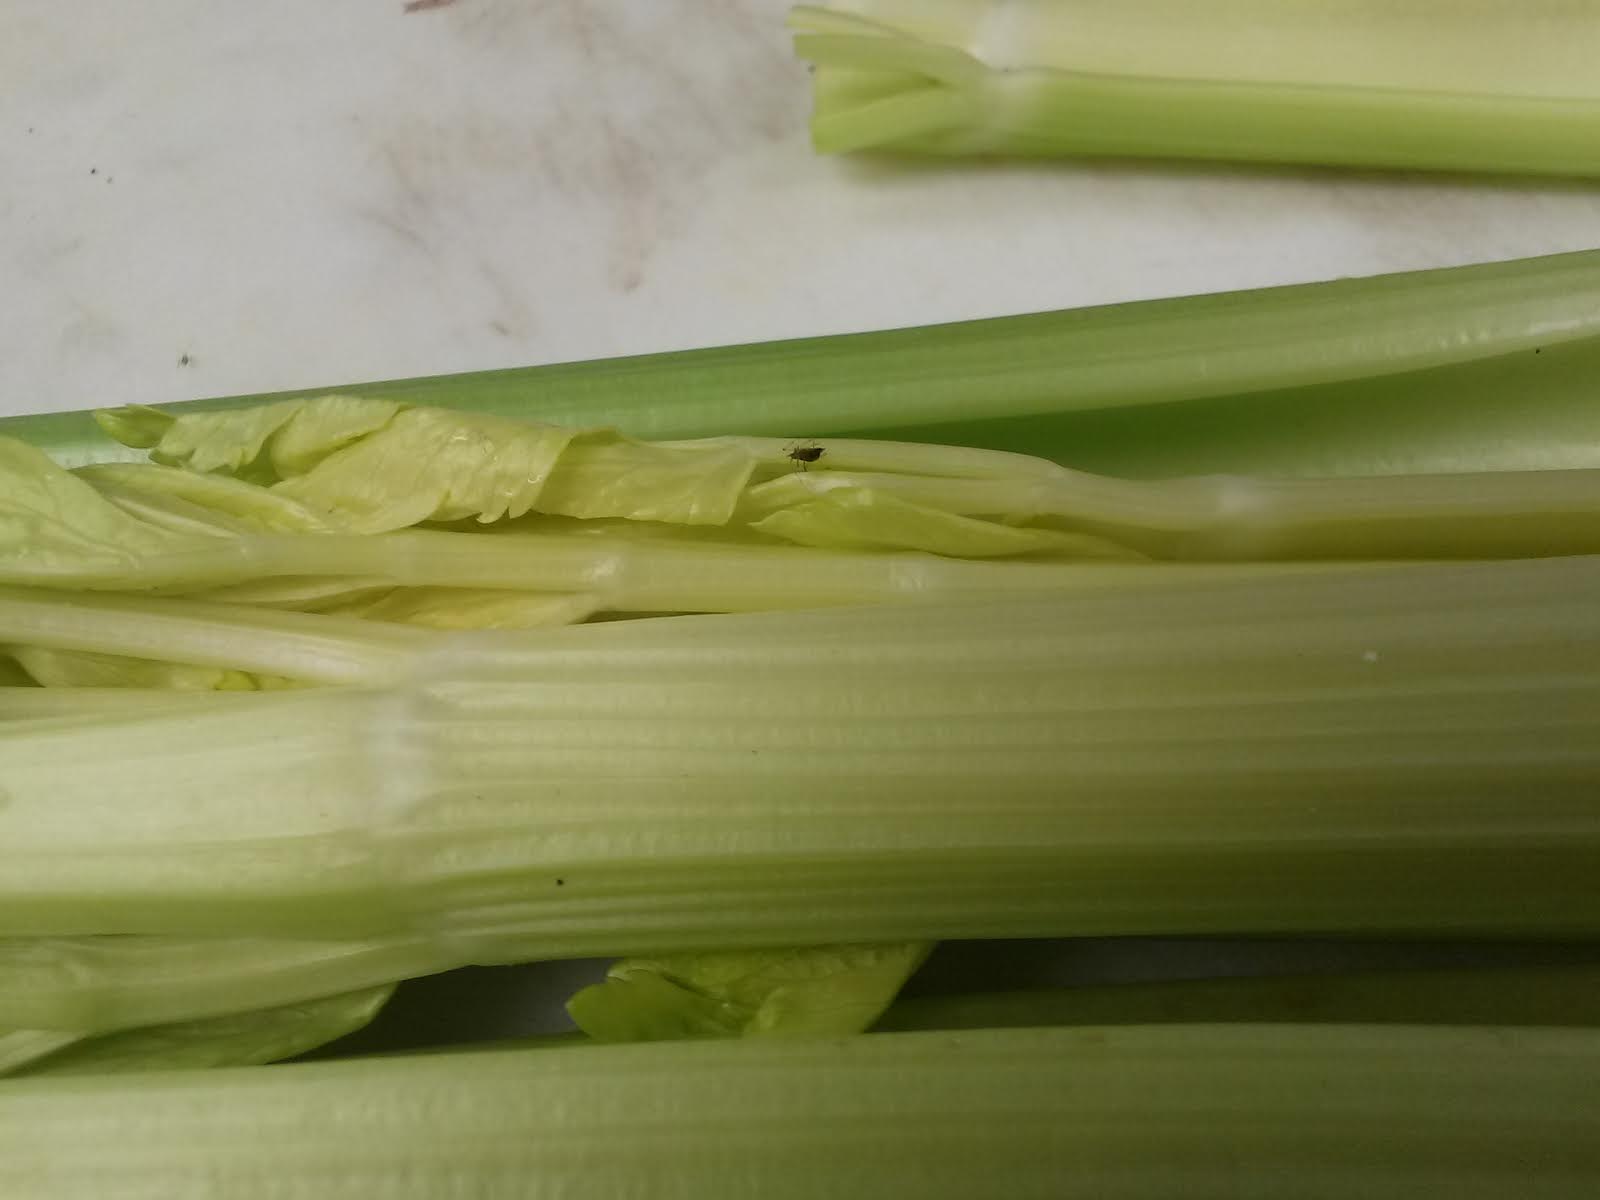 2014-3-7 Kosher Alert - celery unnamed